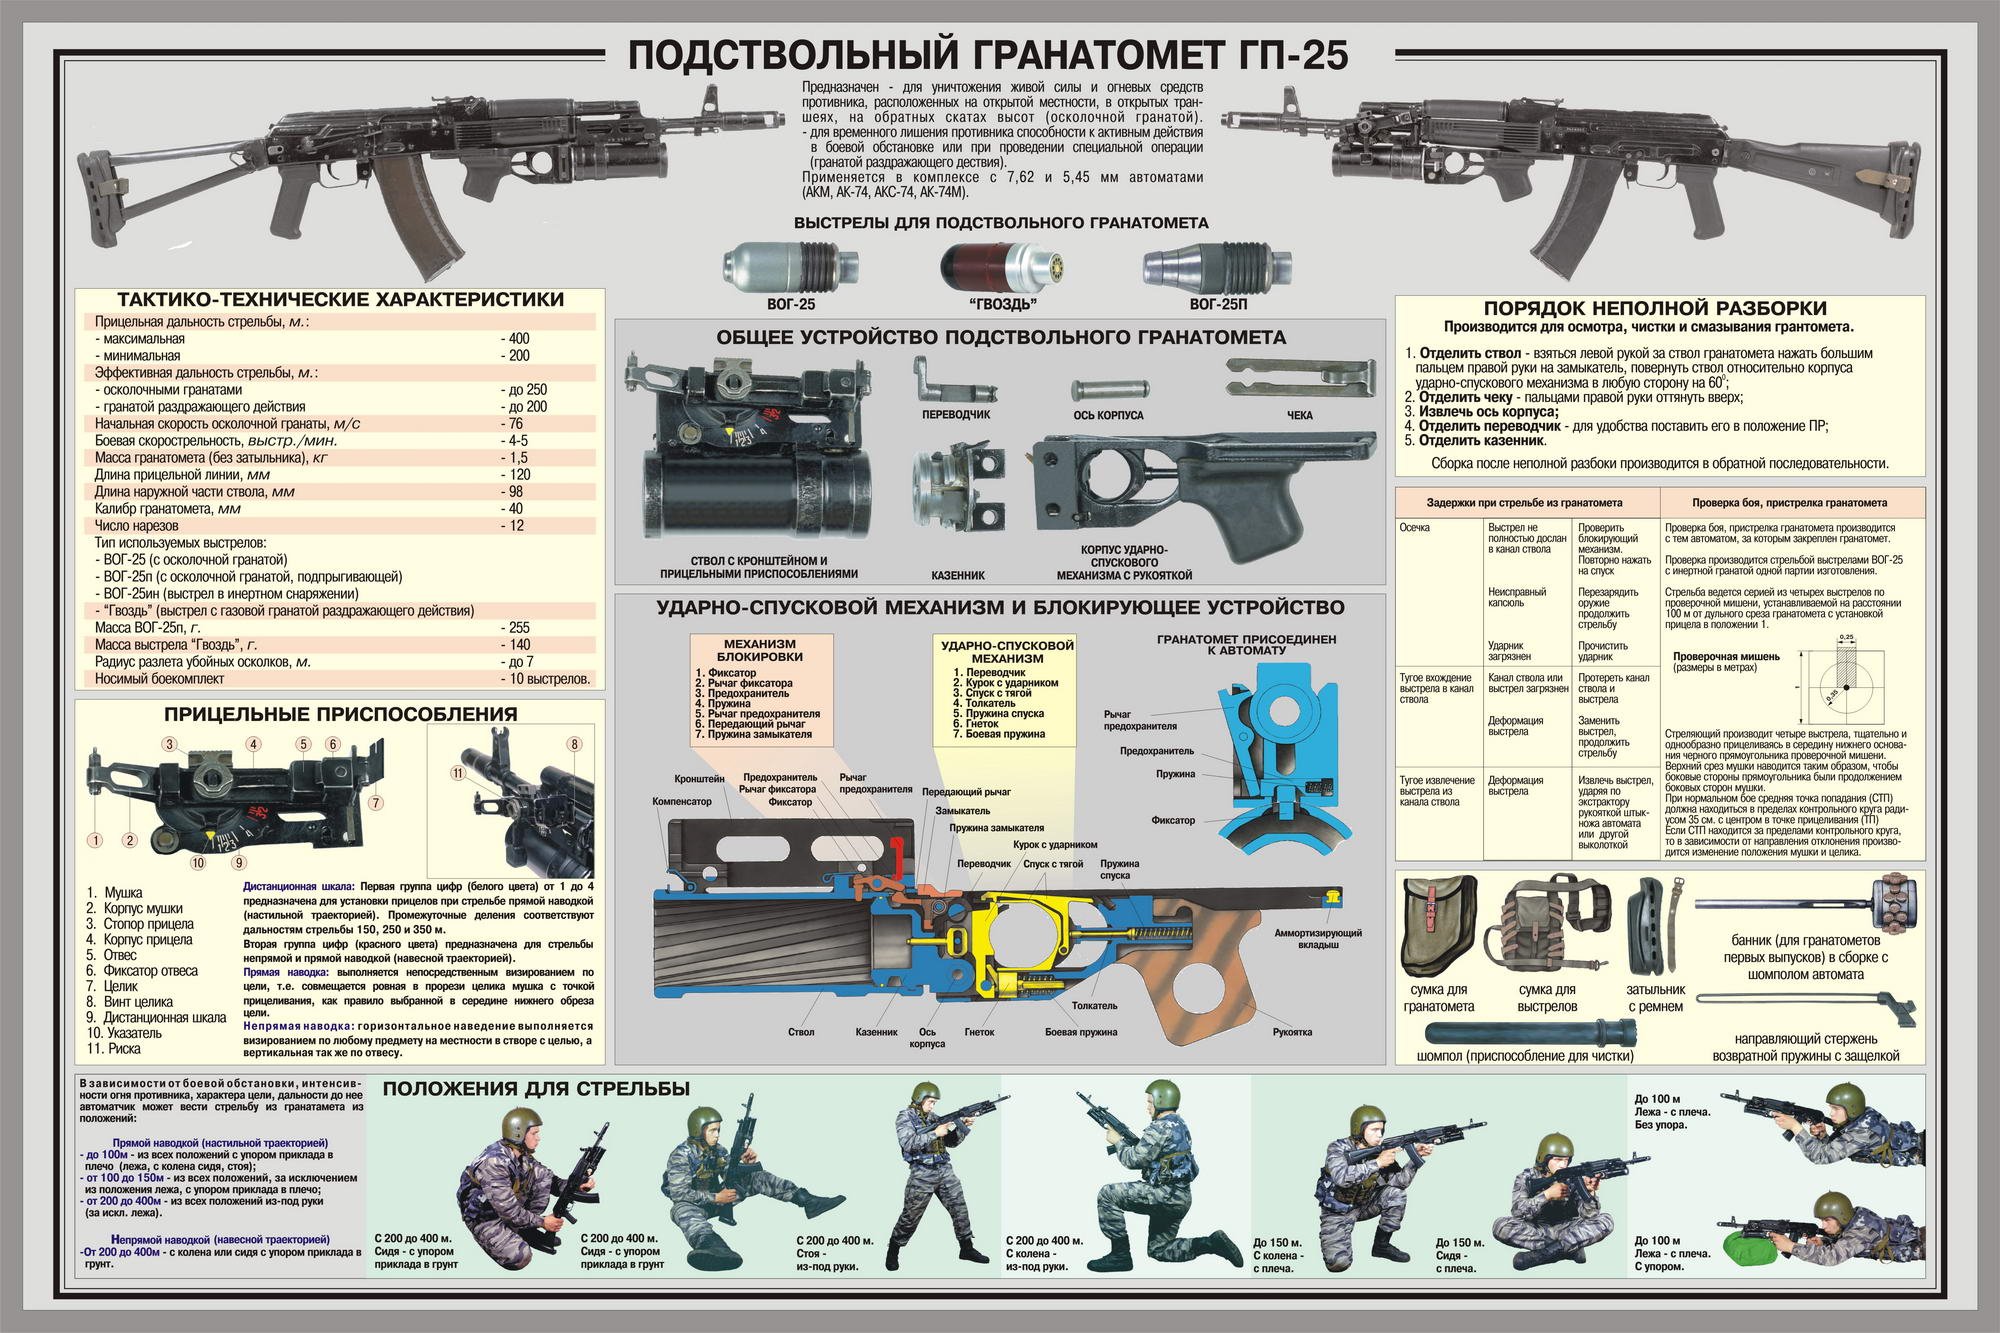 guns, weapons, infographics, Russians - desktop wallpaper